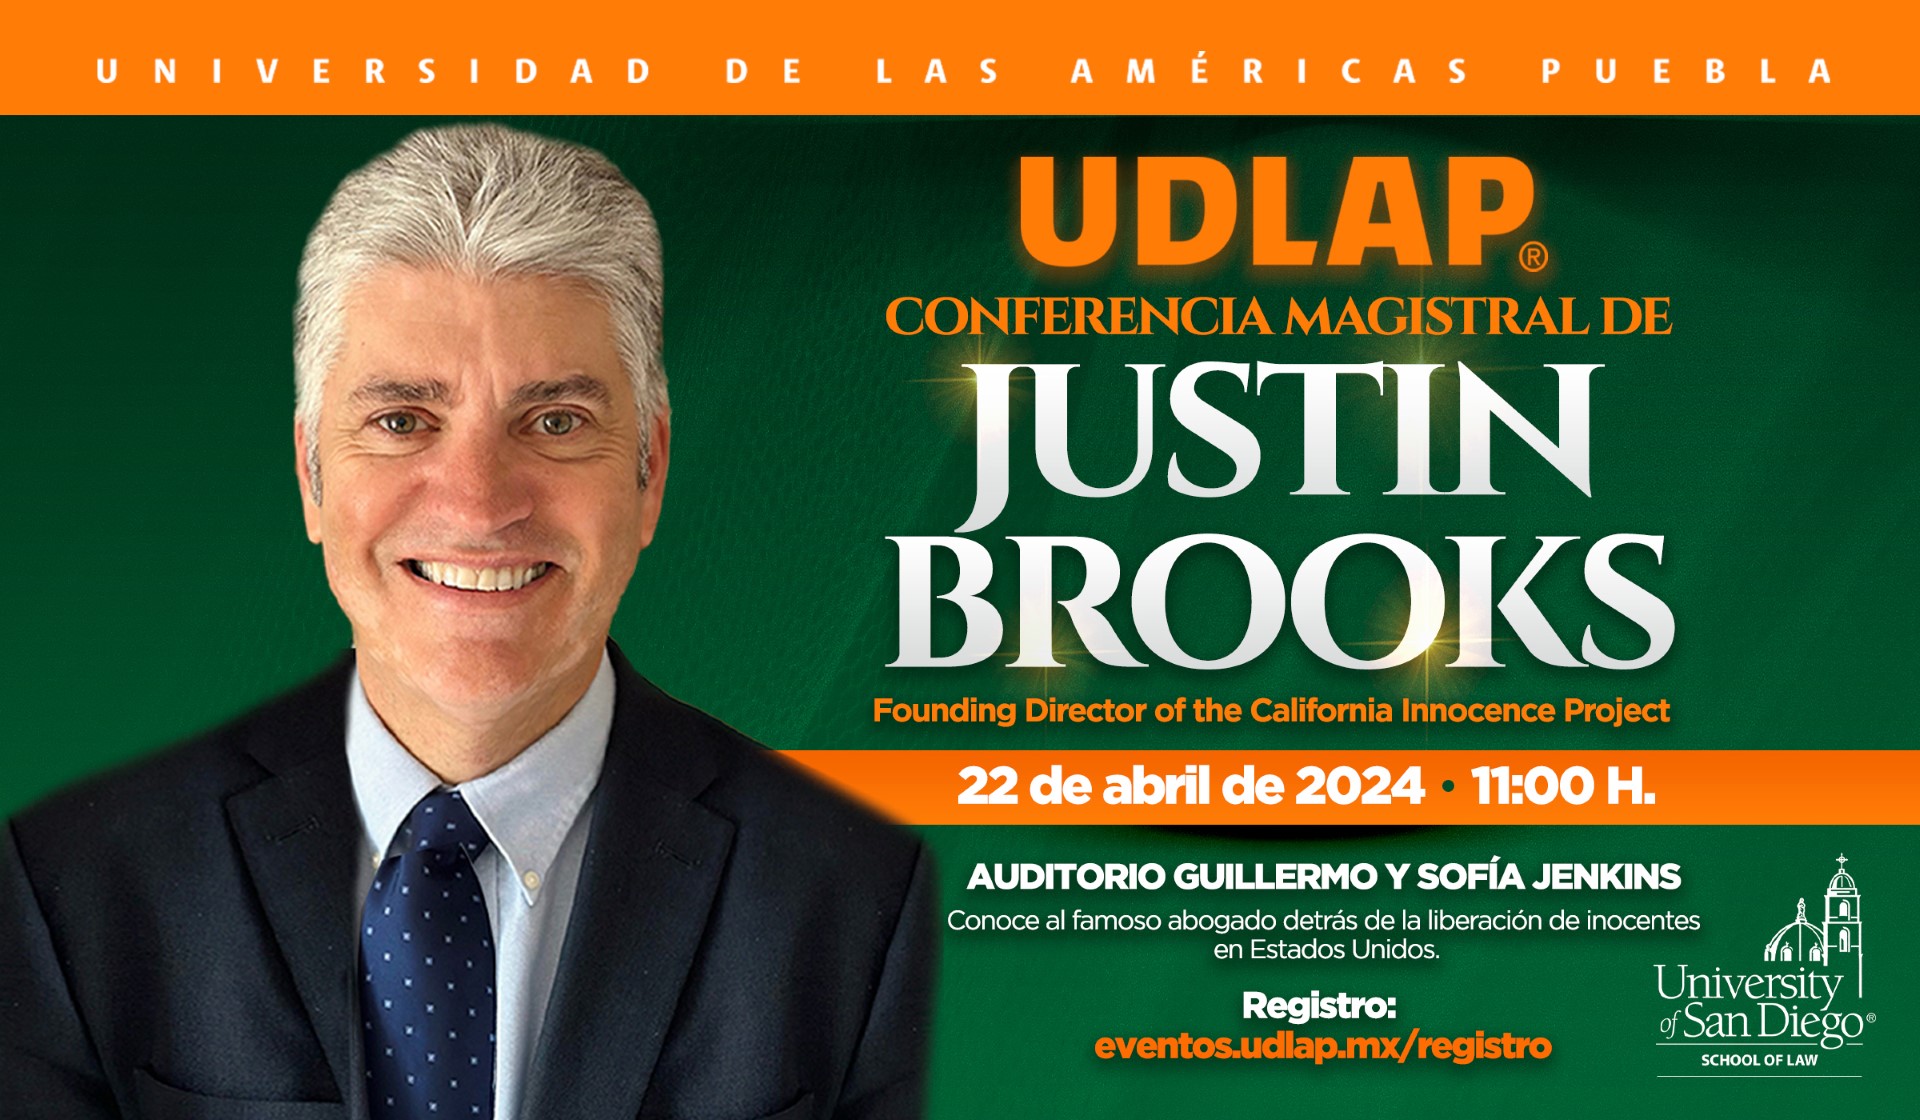 Justin Brooks, el abogado que ha hecho historia en la defensa de inocentes, visitará la UDLAP